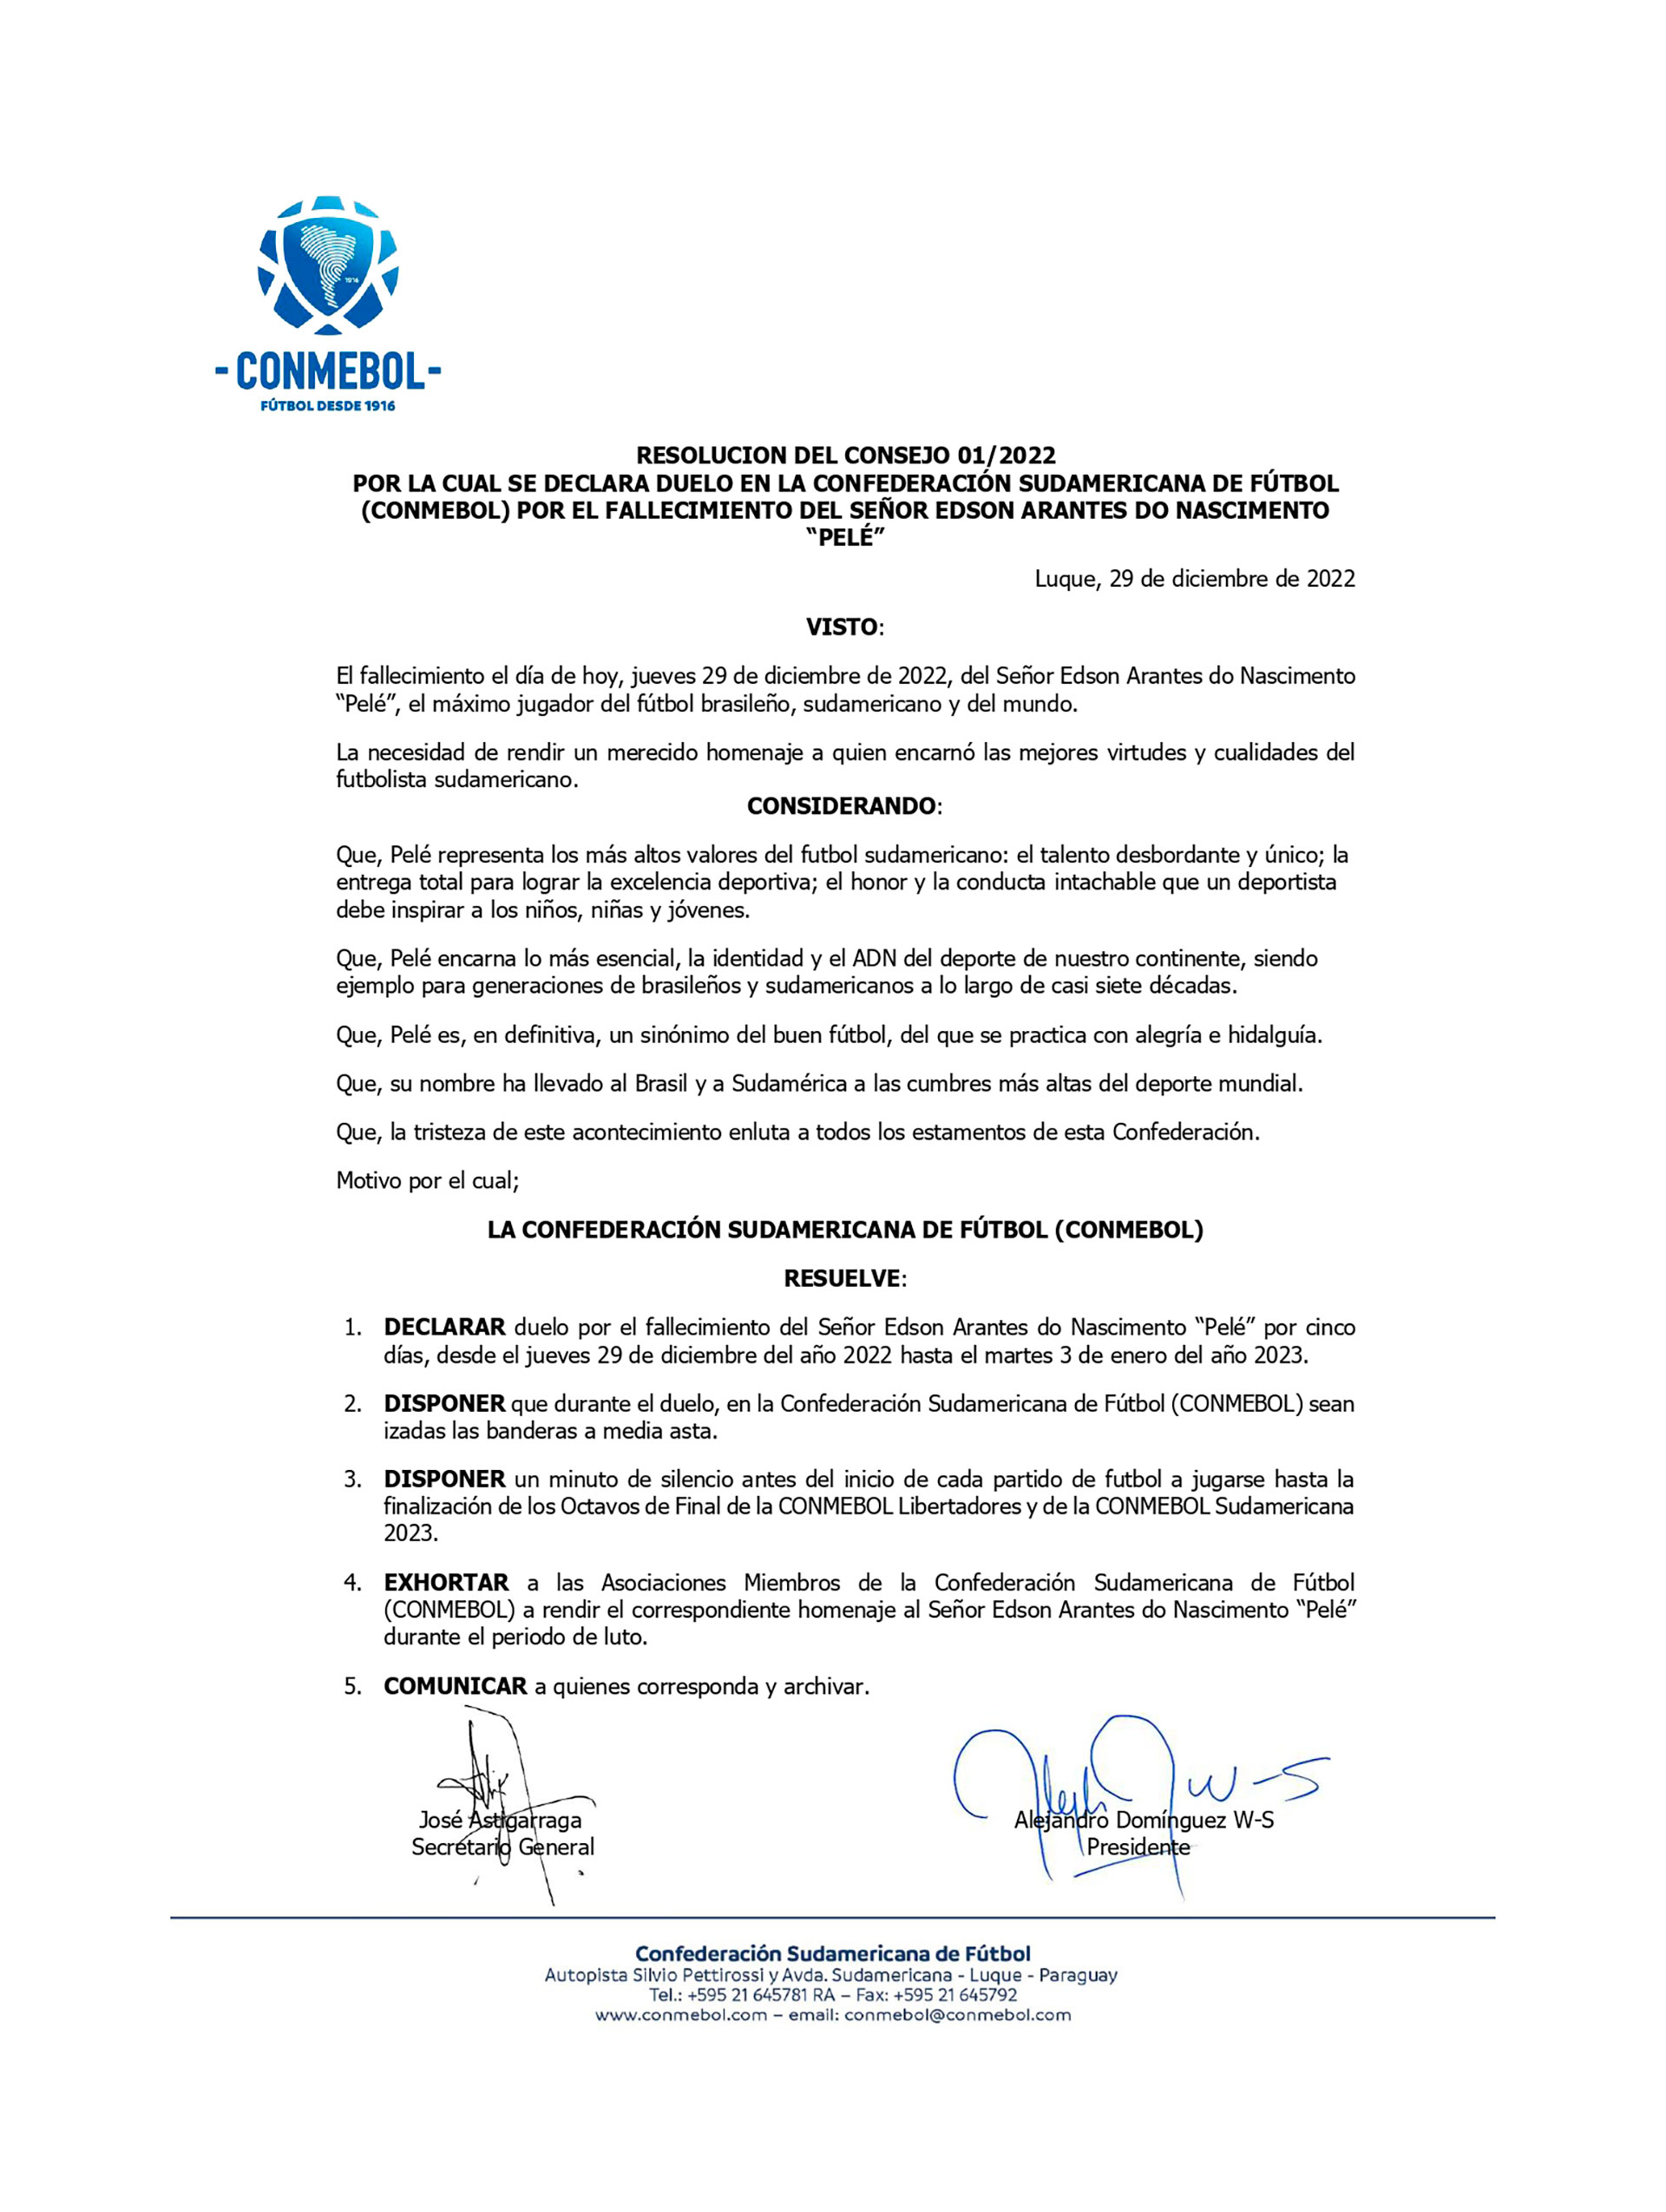 La resolución del Consejo de la Conmebol, publicada el pasado 29 de diciembre